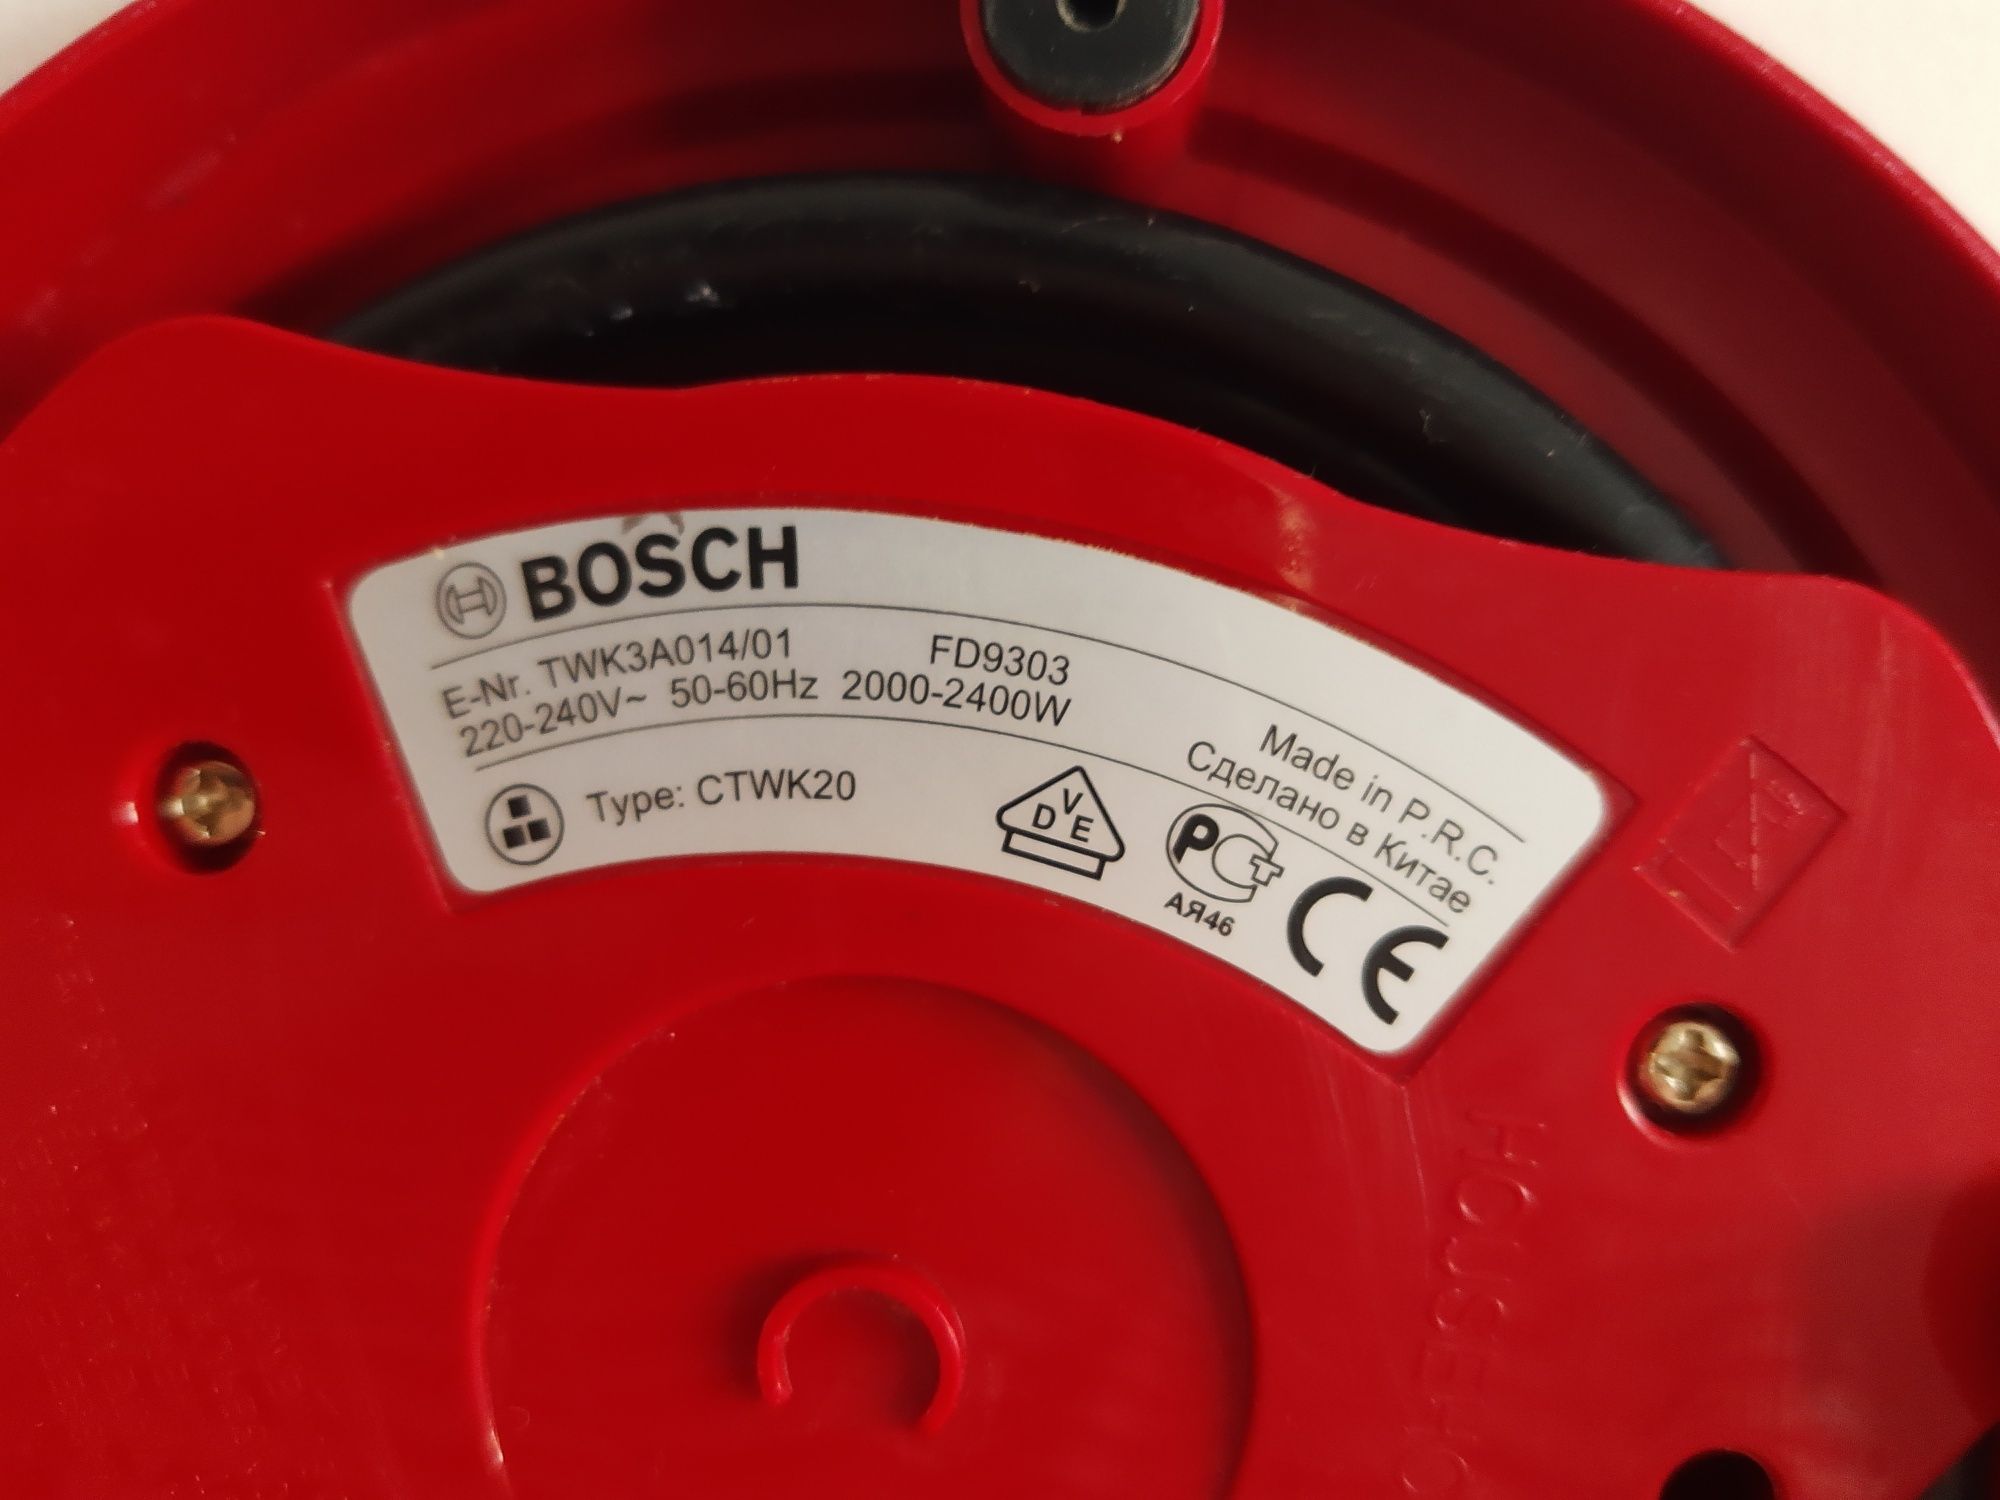 Fierbător apă Bosch, culoare roșu, 2400 W,  capacitate 1,7 L